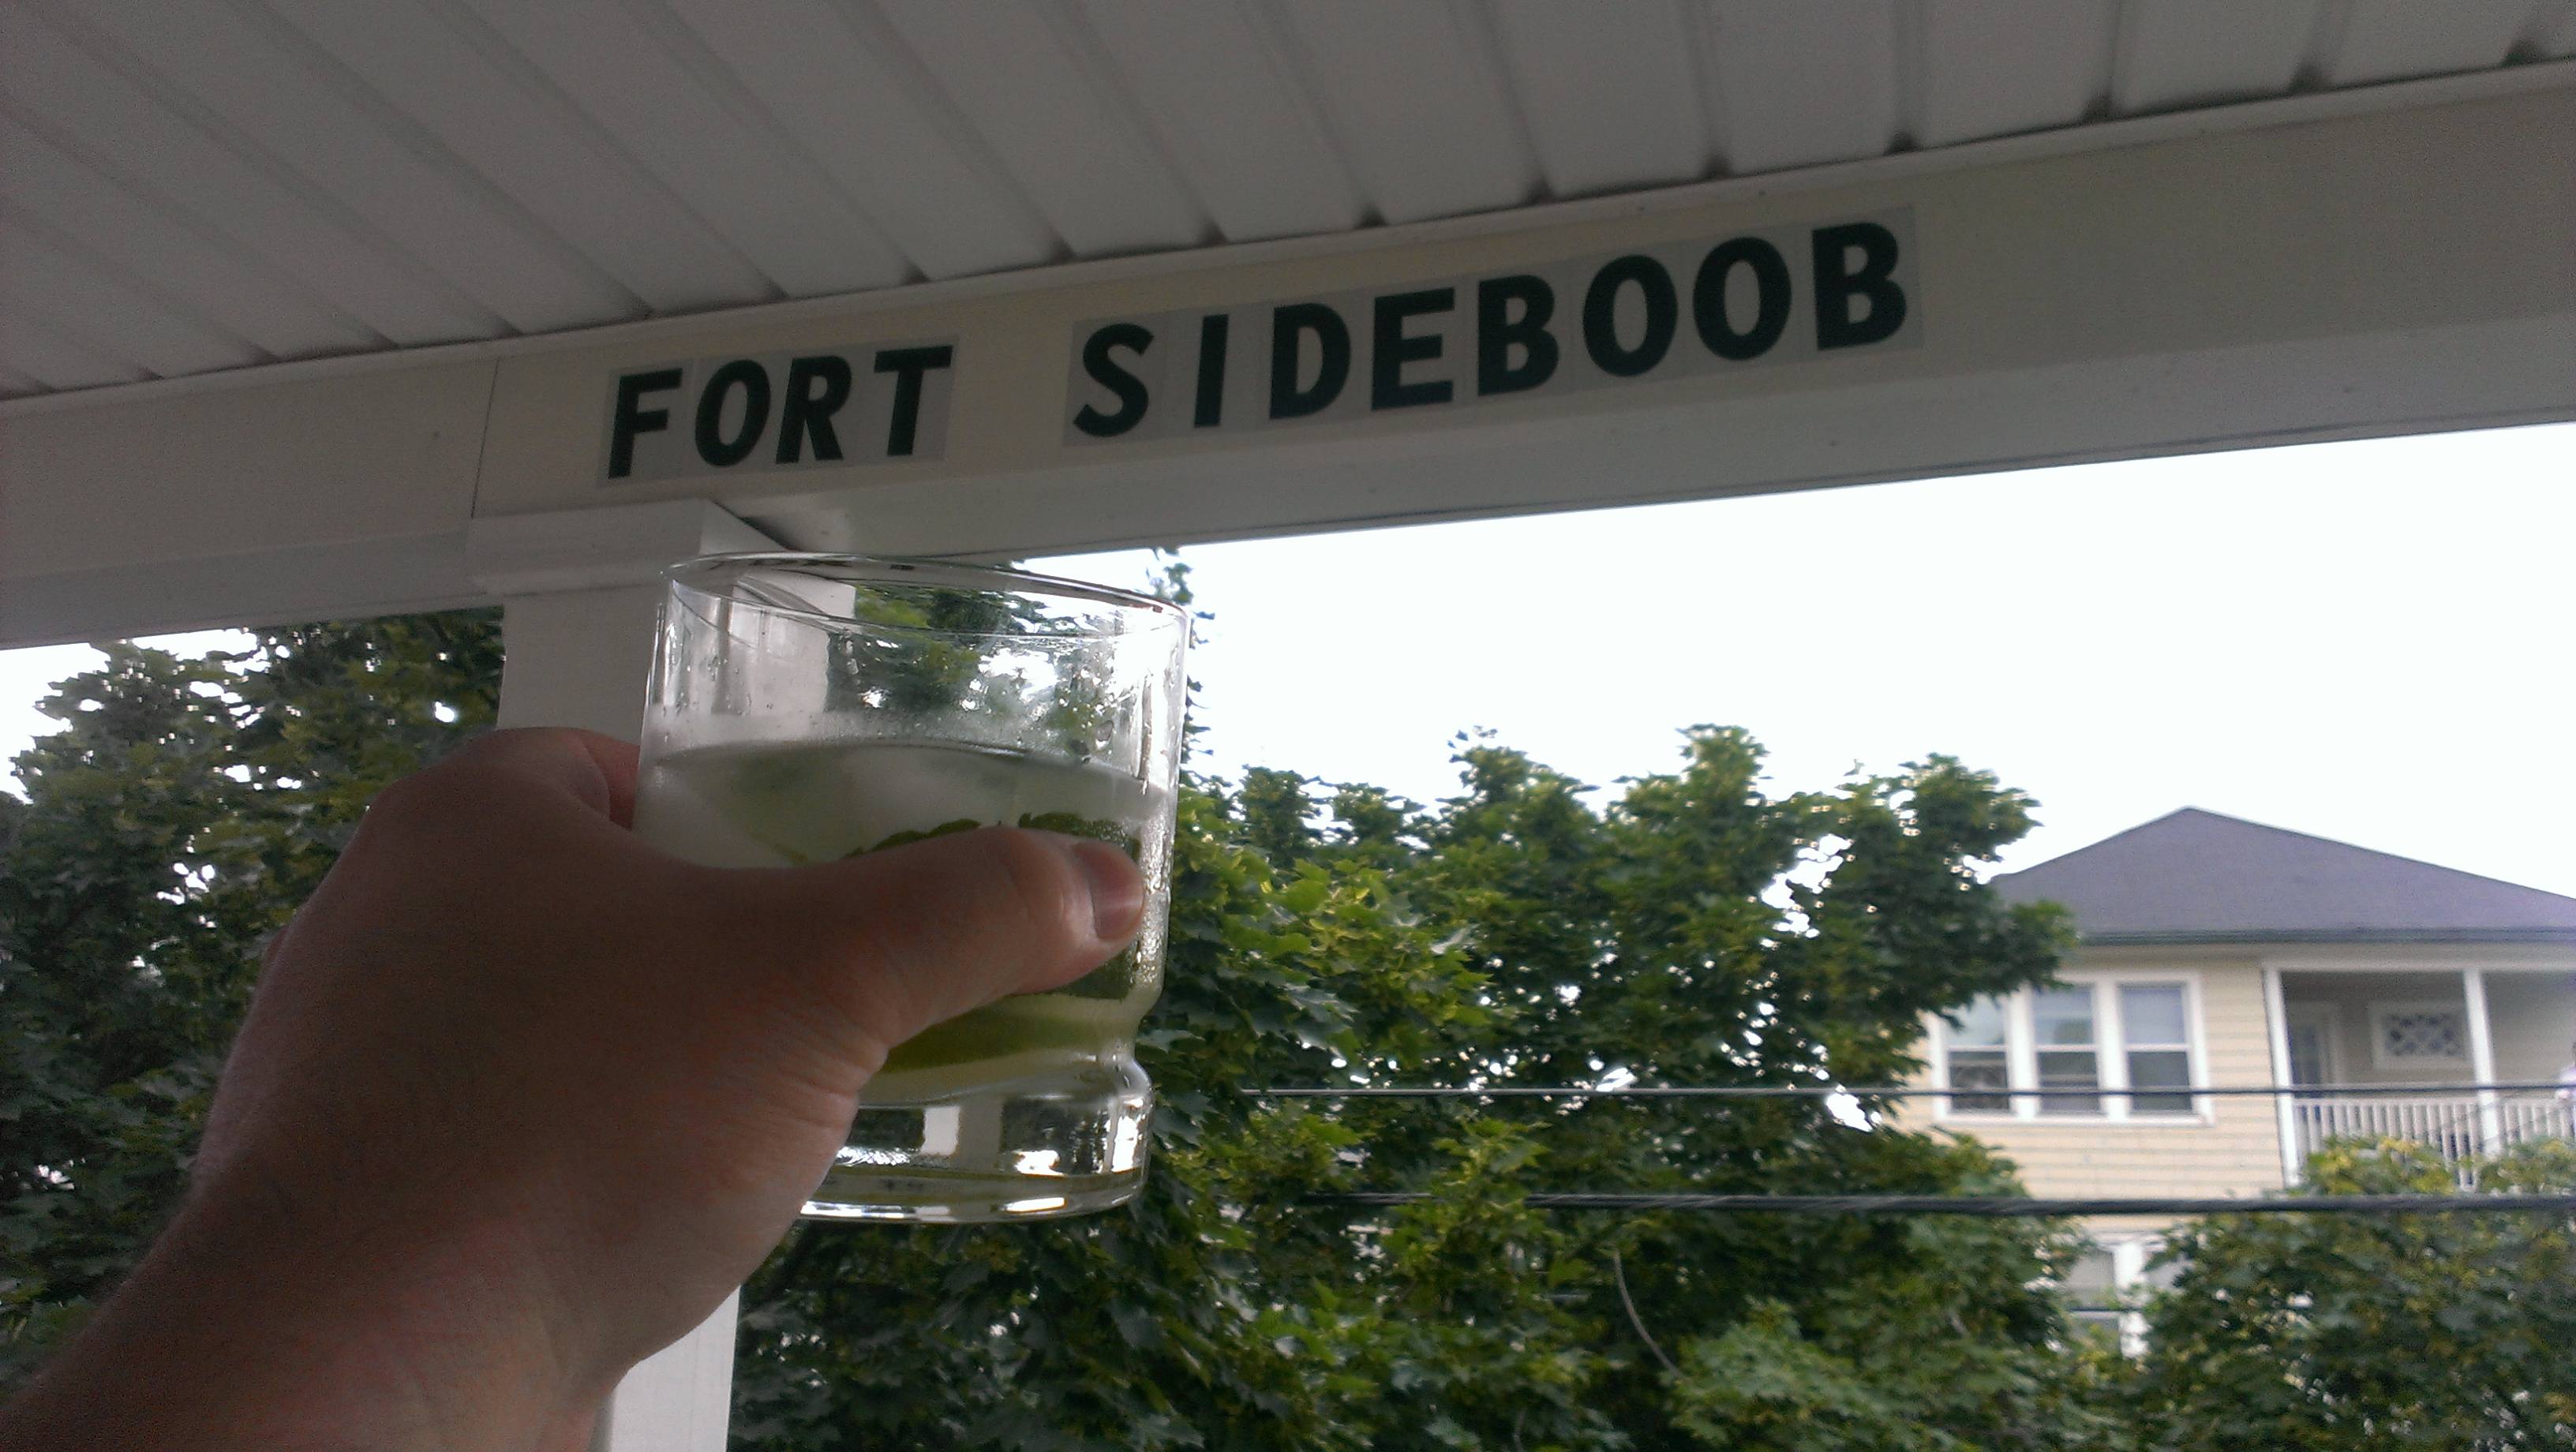 tree - Fort Sideboob